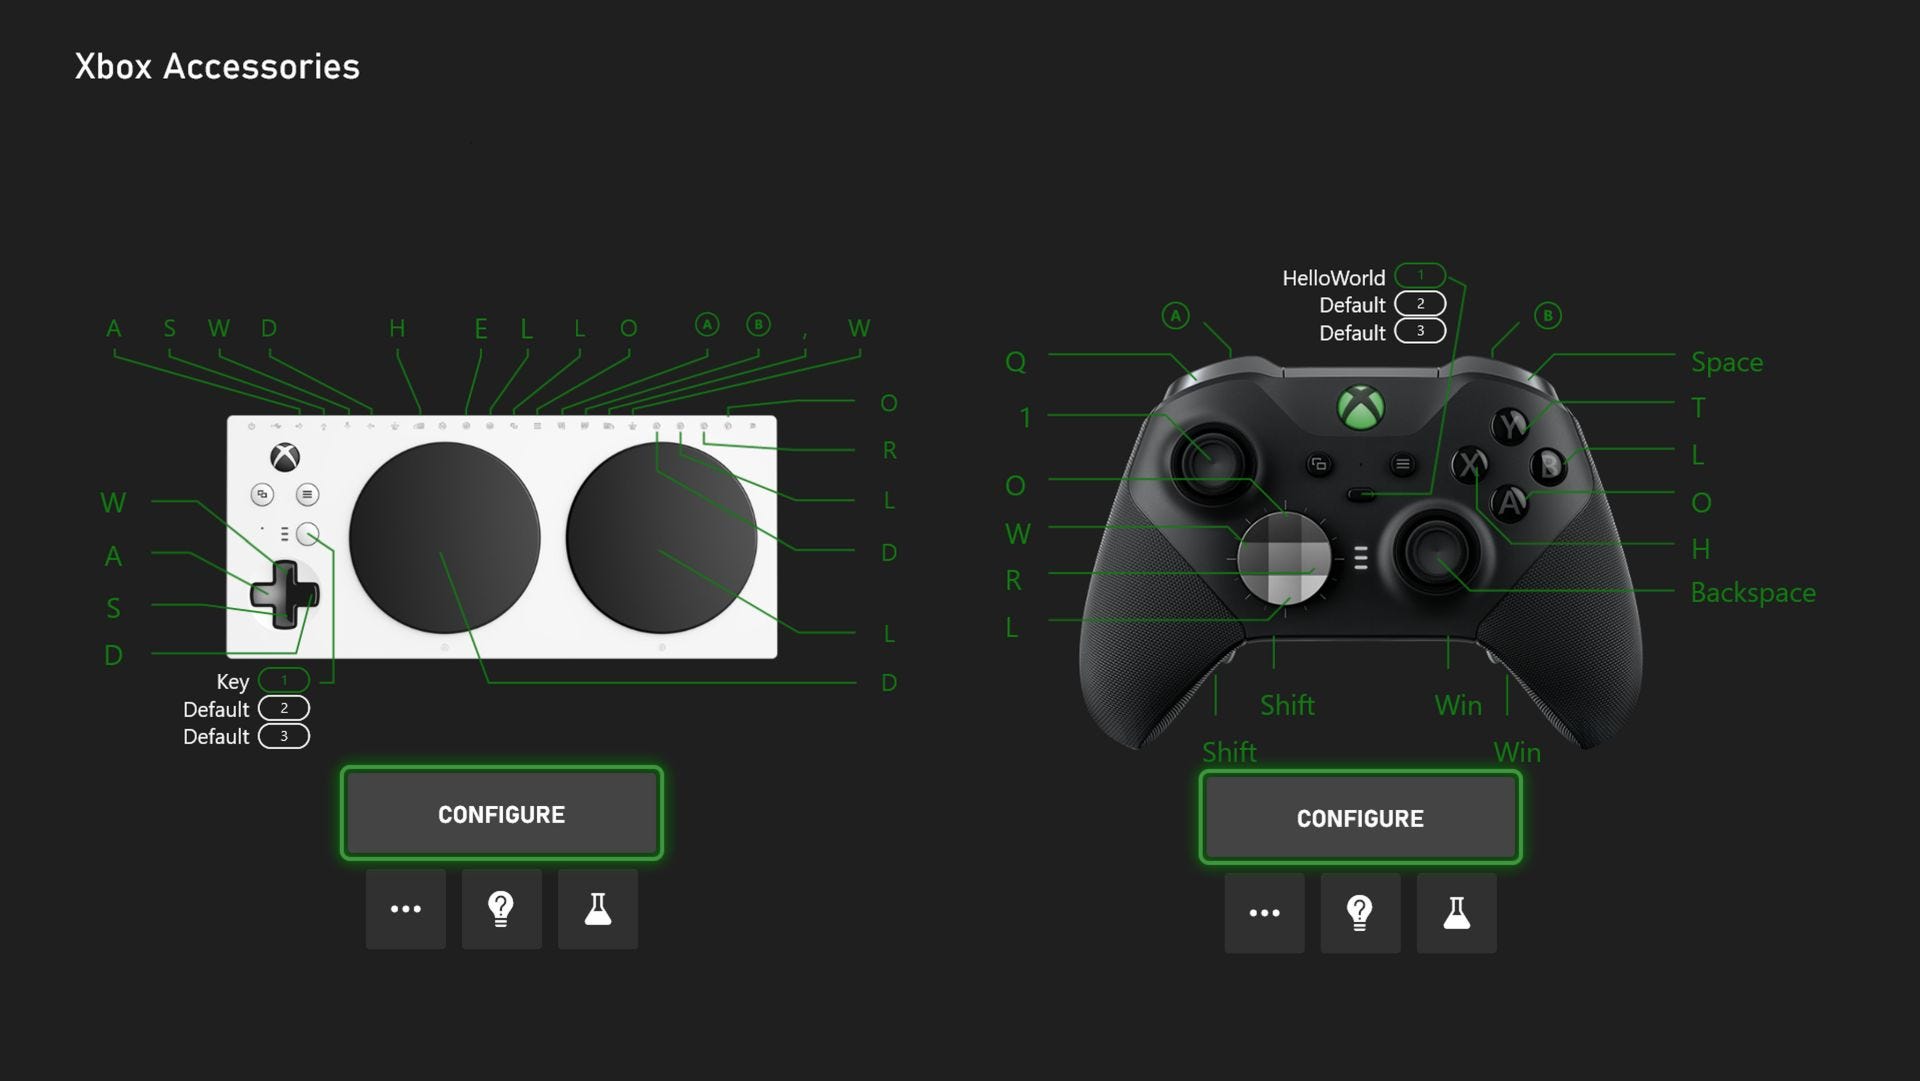 Az októberi Xbox-frissítés most megjelenik, és hozzáadja a billentyűzet hozzárendelését a vezérlőkhöz